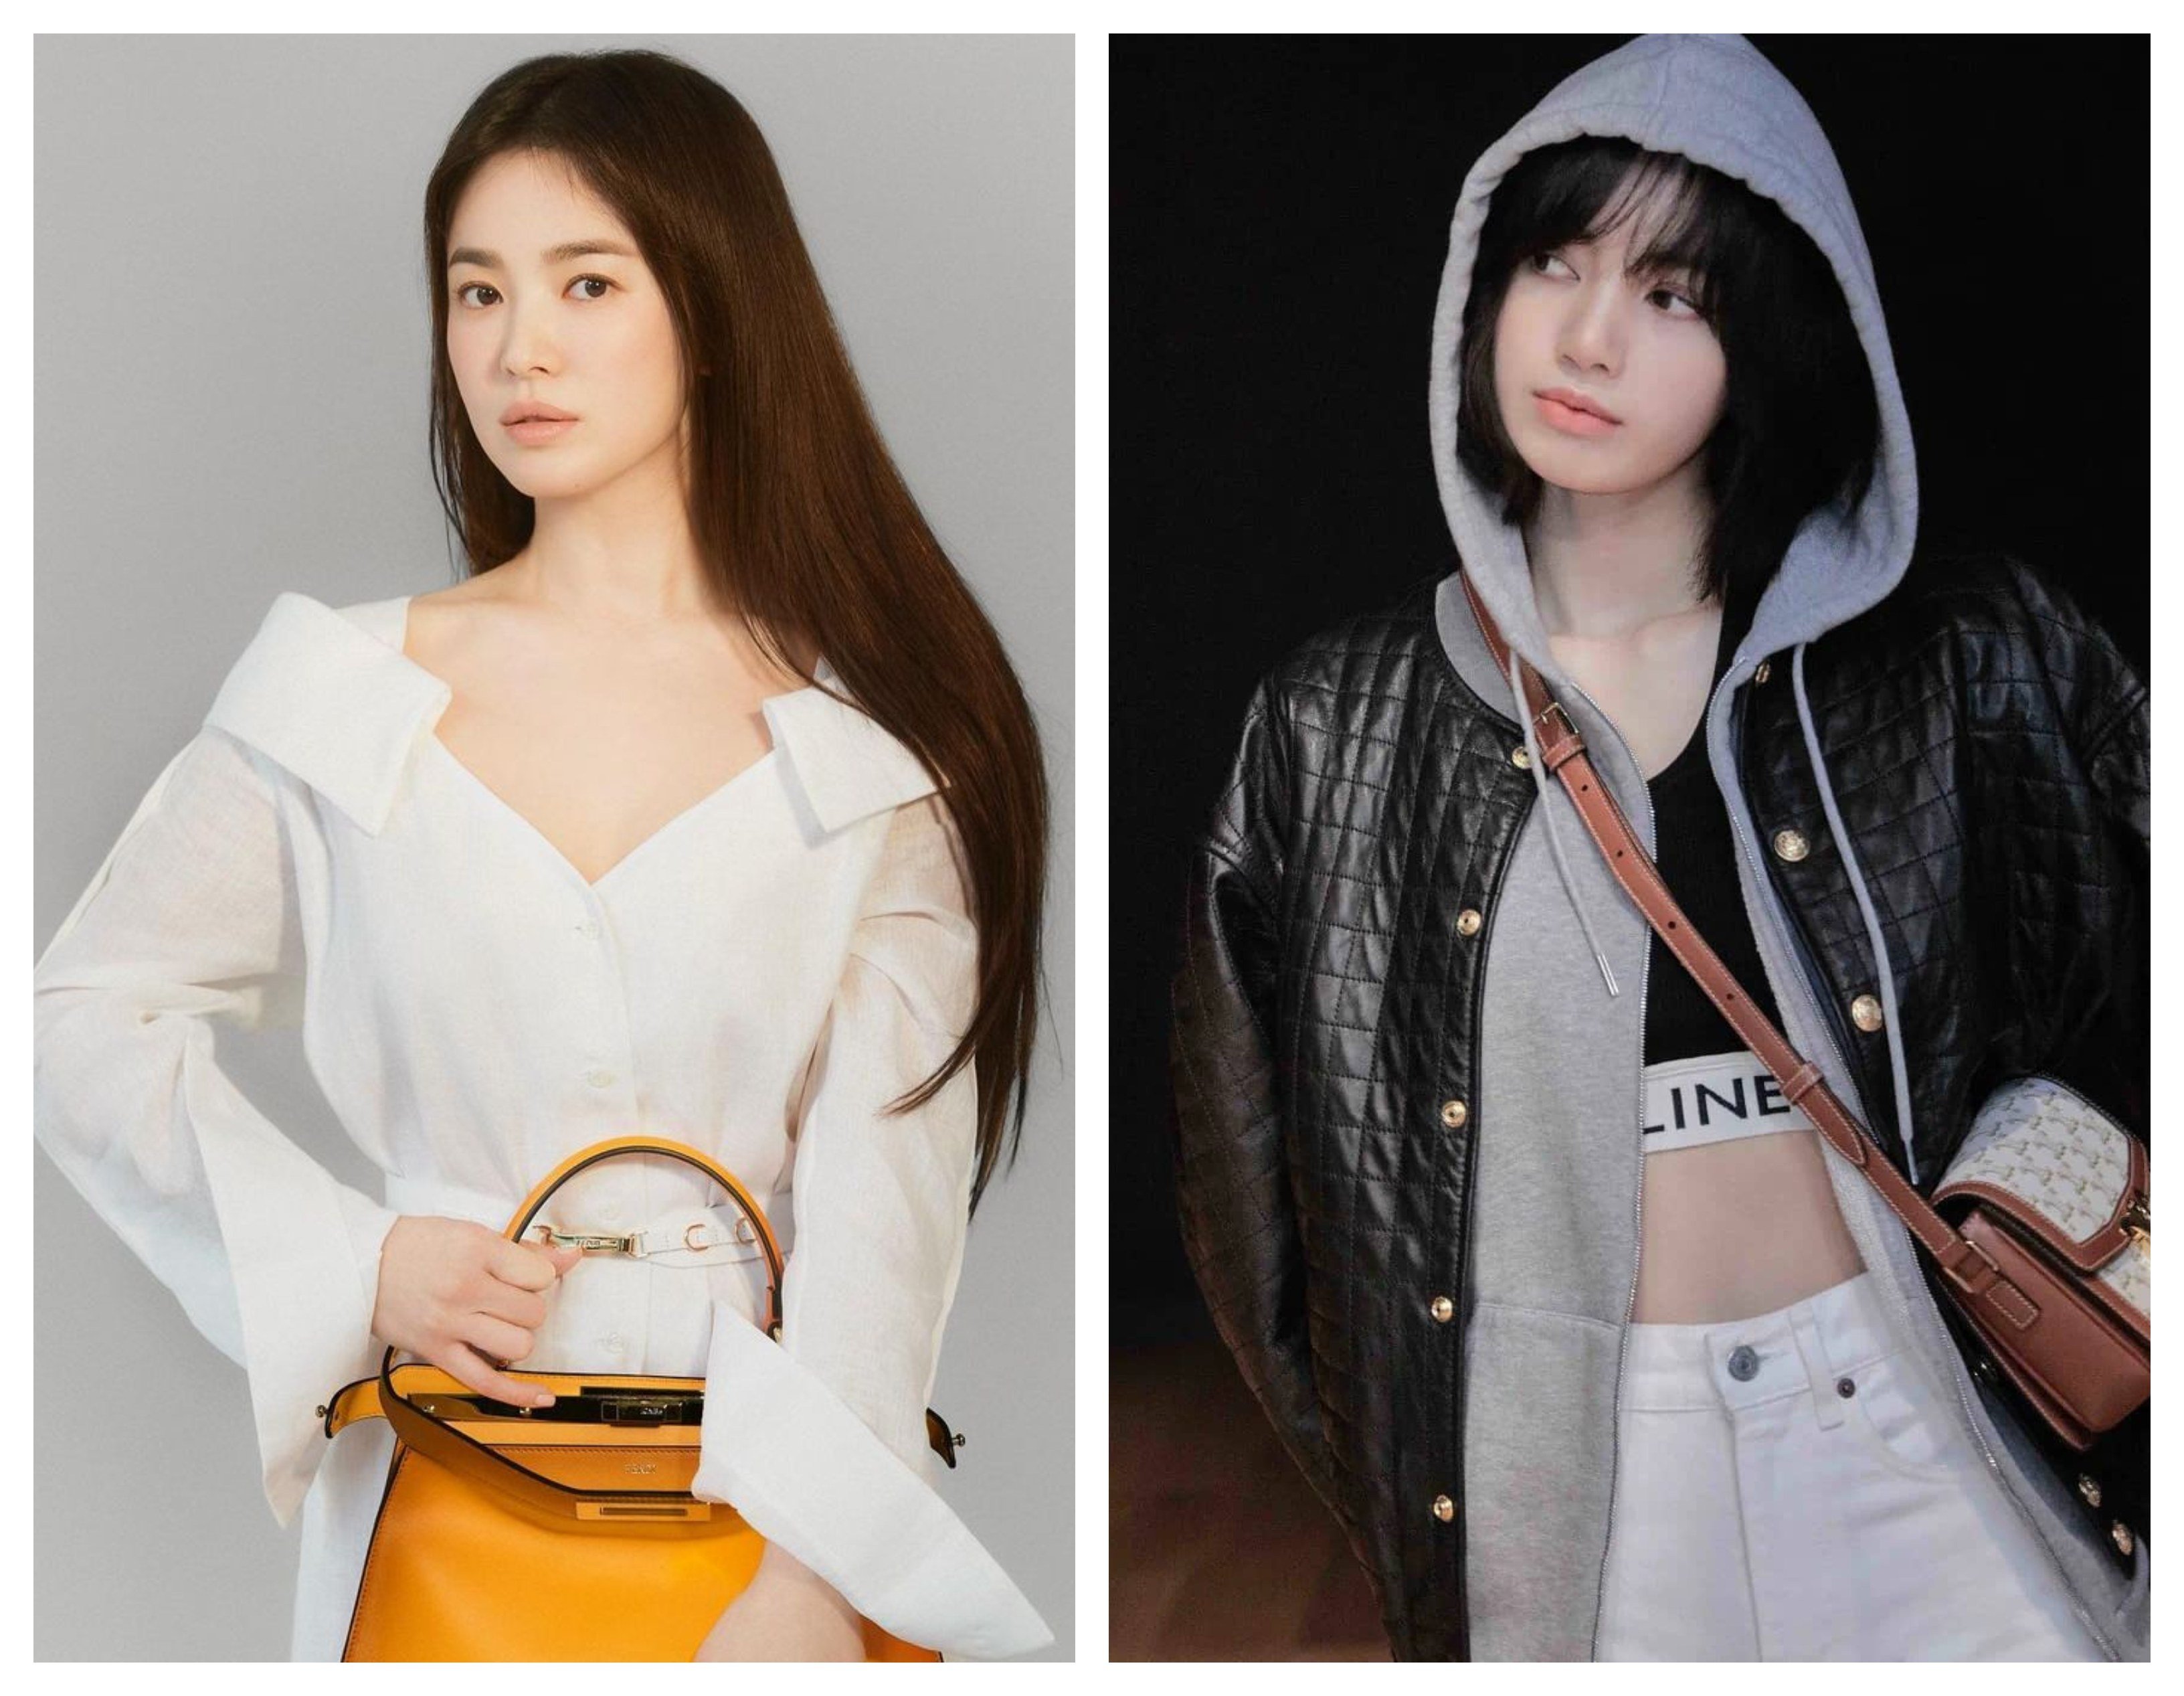 Celine Men's Show: BTS' V And BLACKPINK's Lisa Steal The Fashion